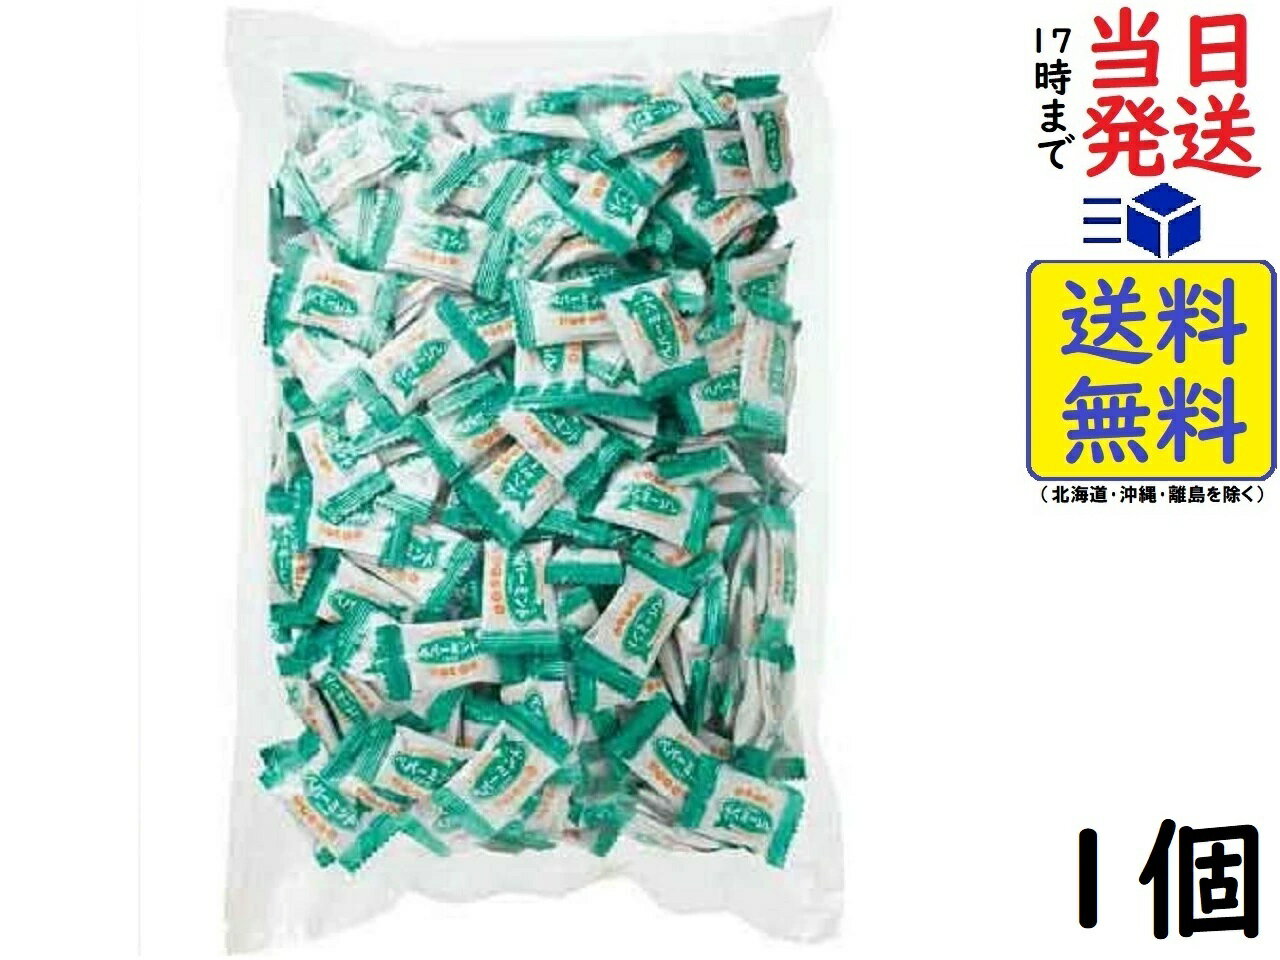 キャンディ 扇雀飴本舗 ペパーミントキャンディ 300粒 (980g)賞味期限2025/04